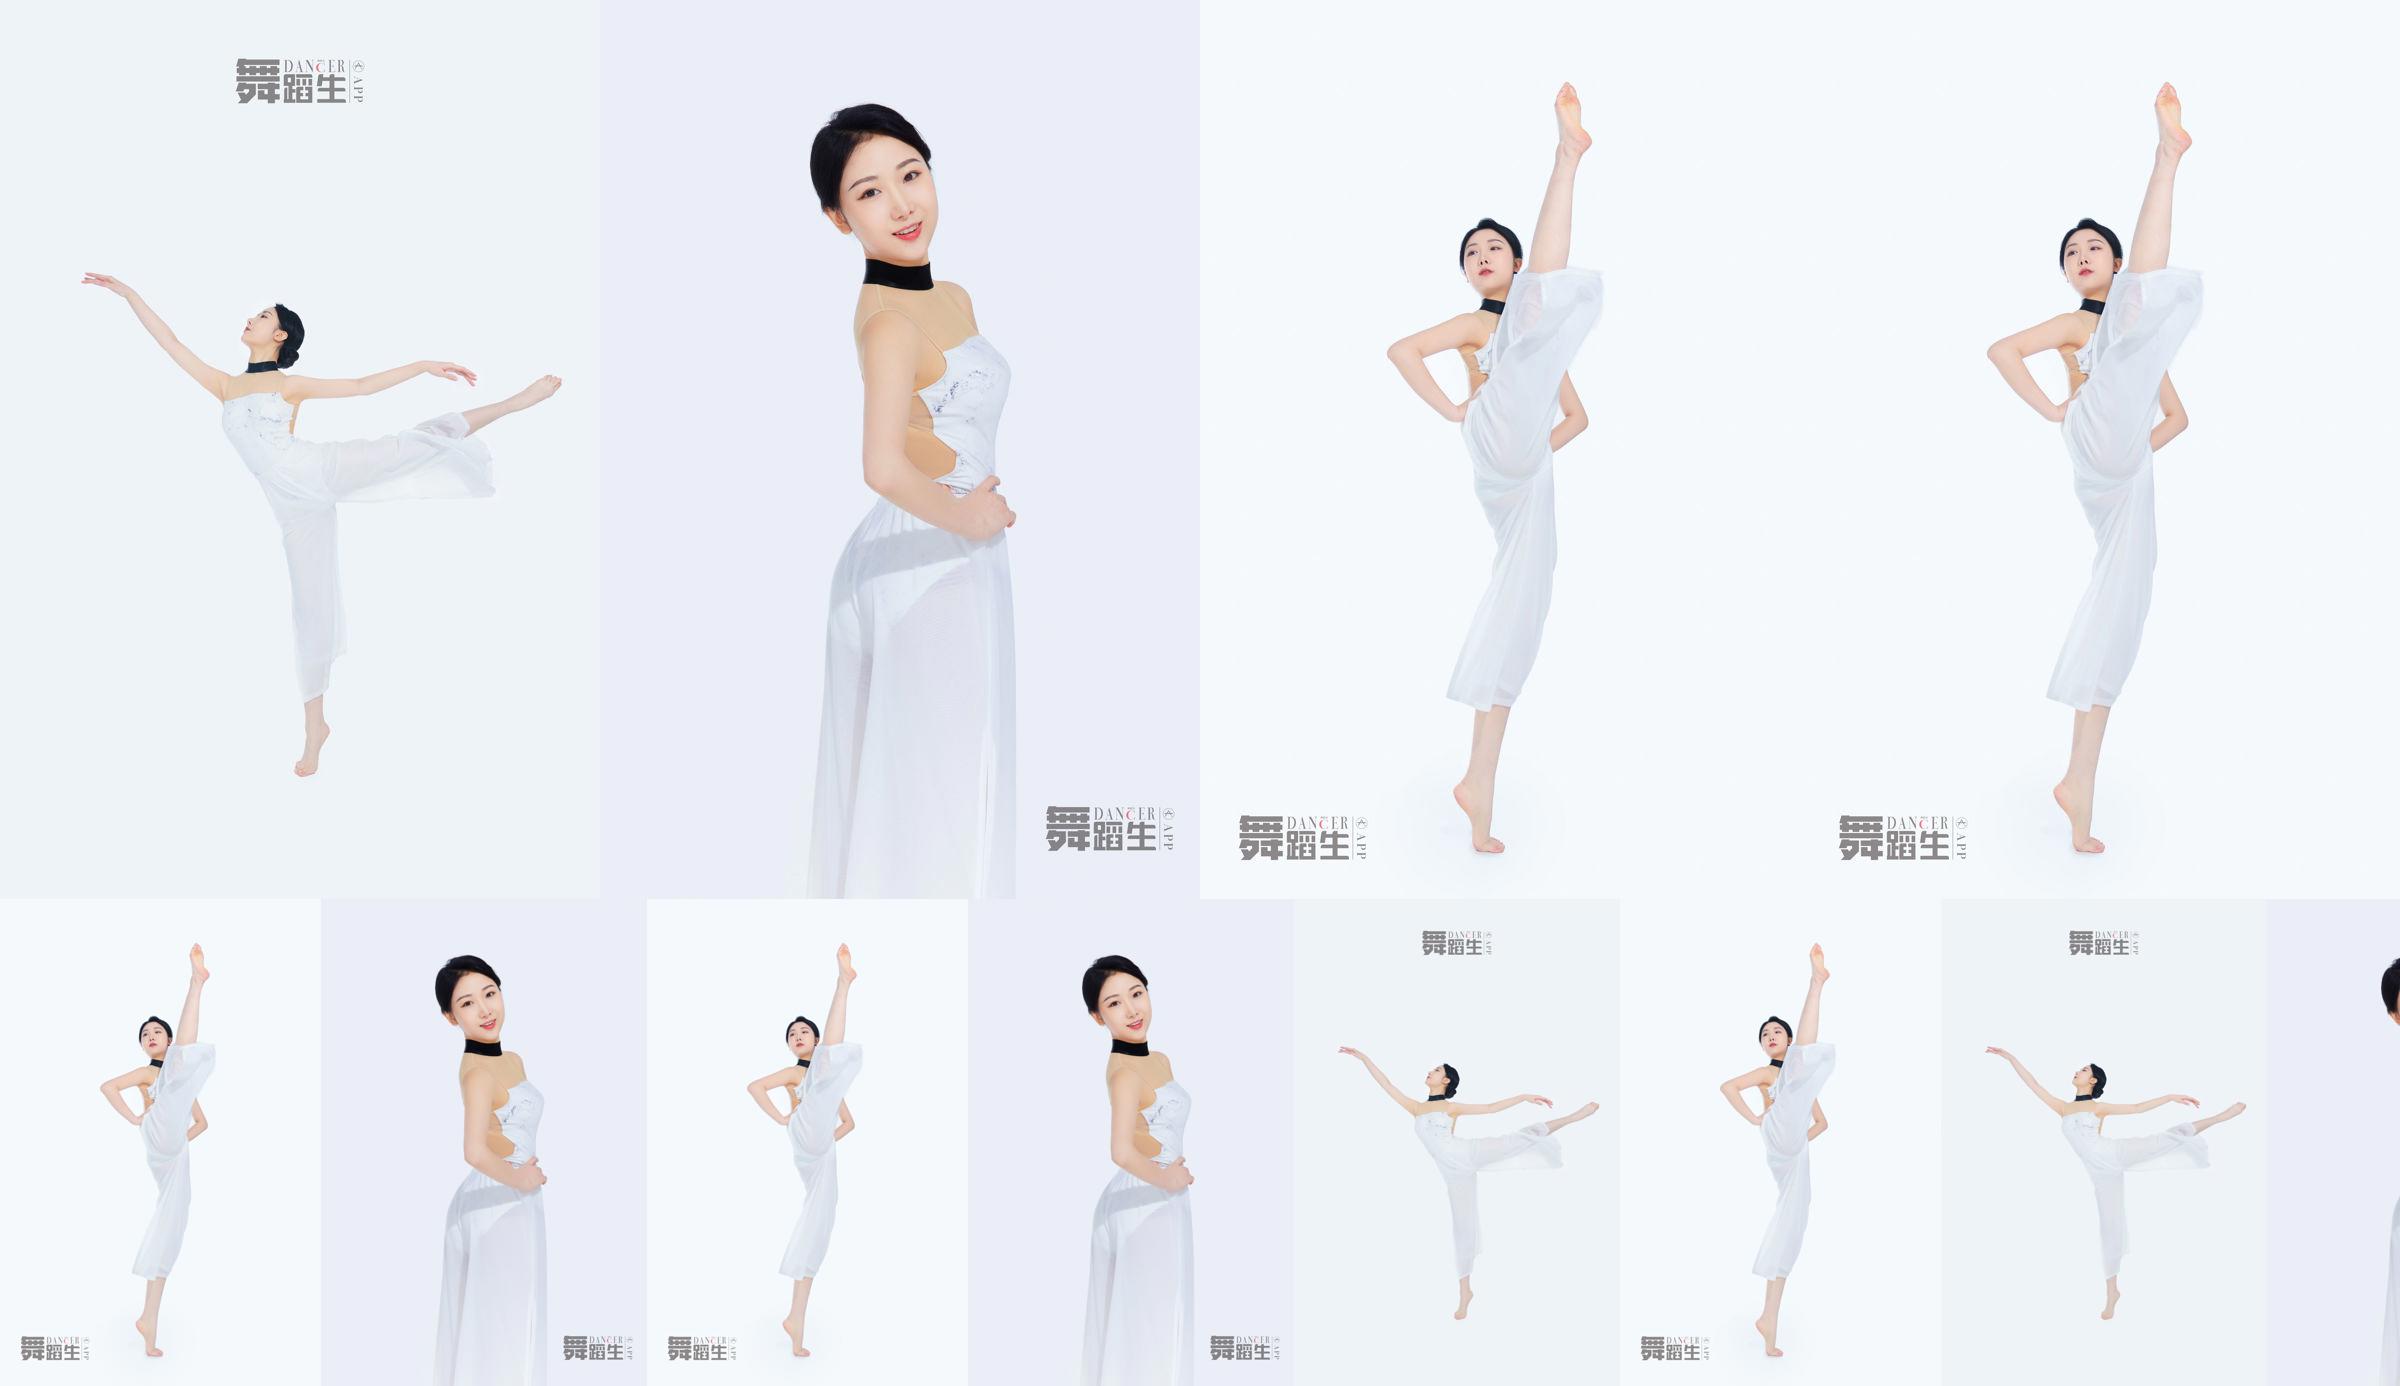 [Carrie Galli] Journal d'un étudiant en danse 081 Xue Hui No.a49b2c Page 1